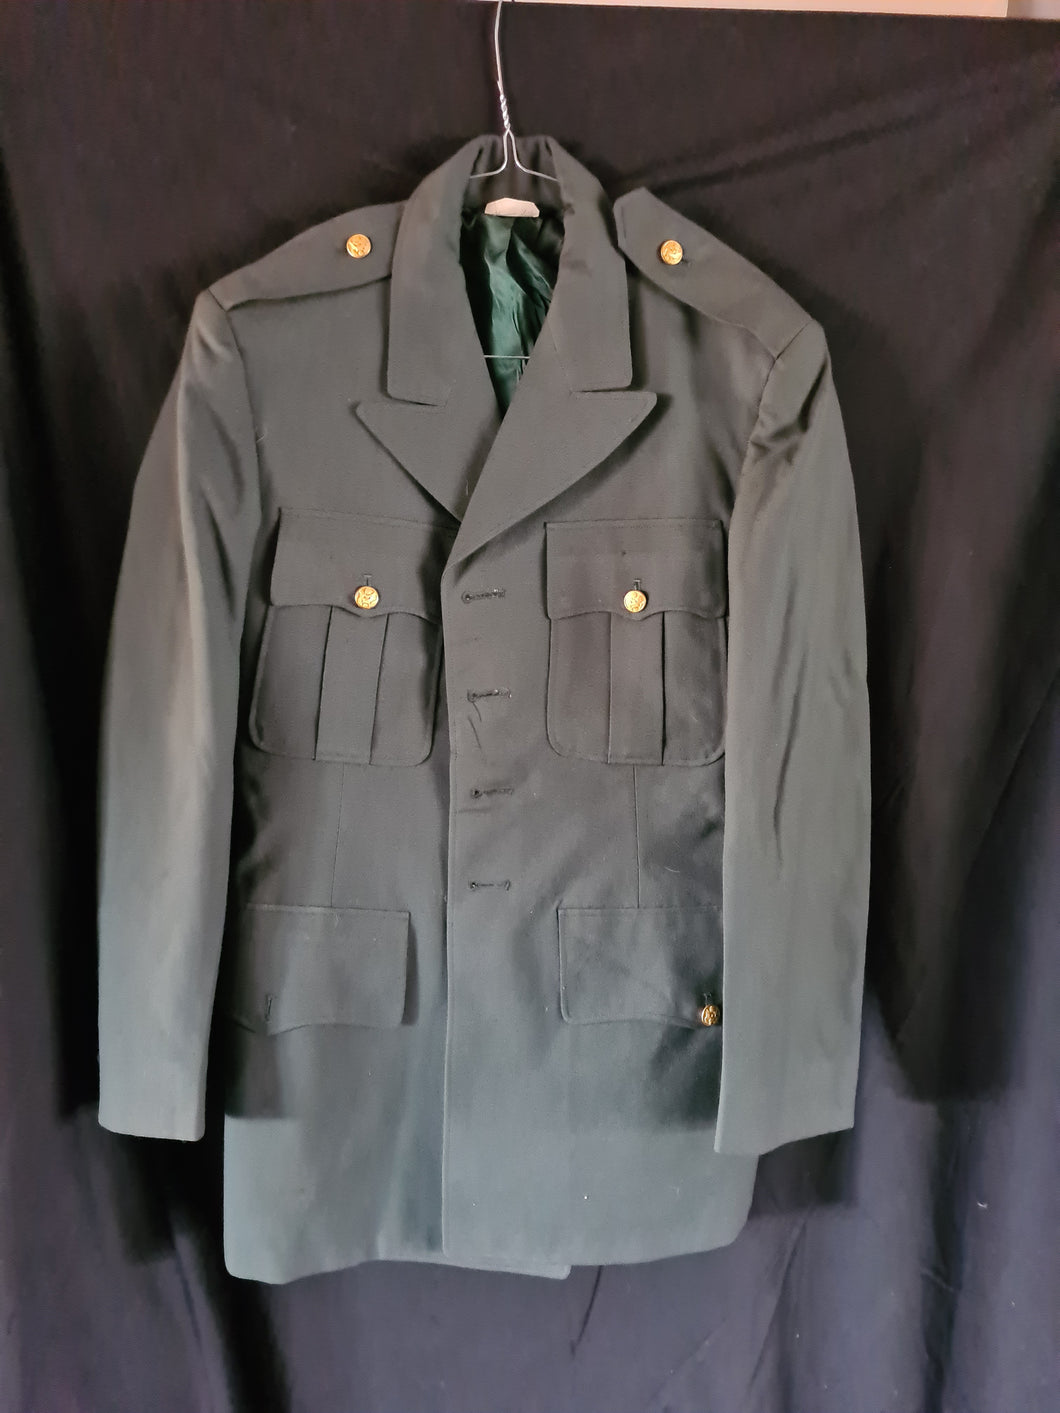 Vietnam War AG 44 Dress jacket